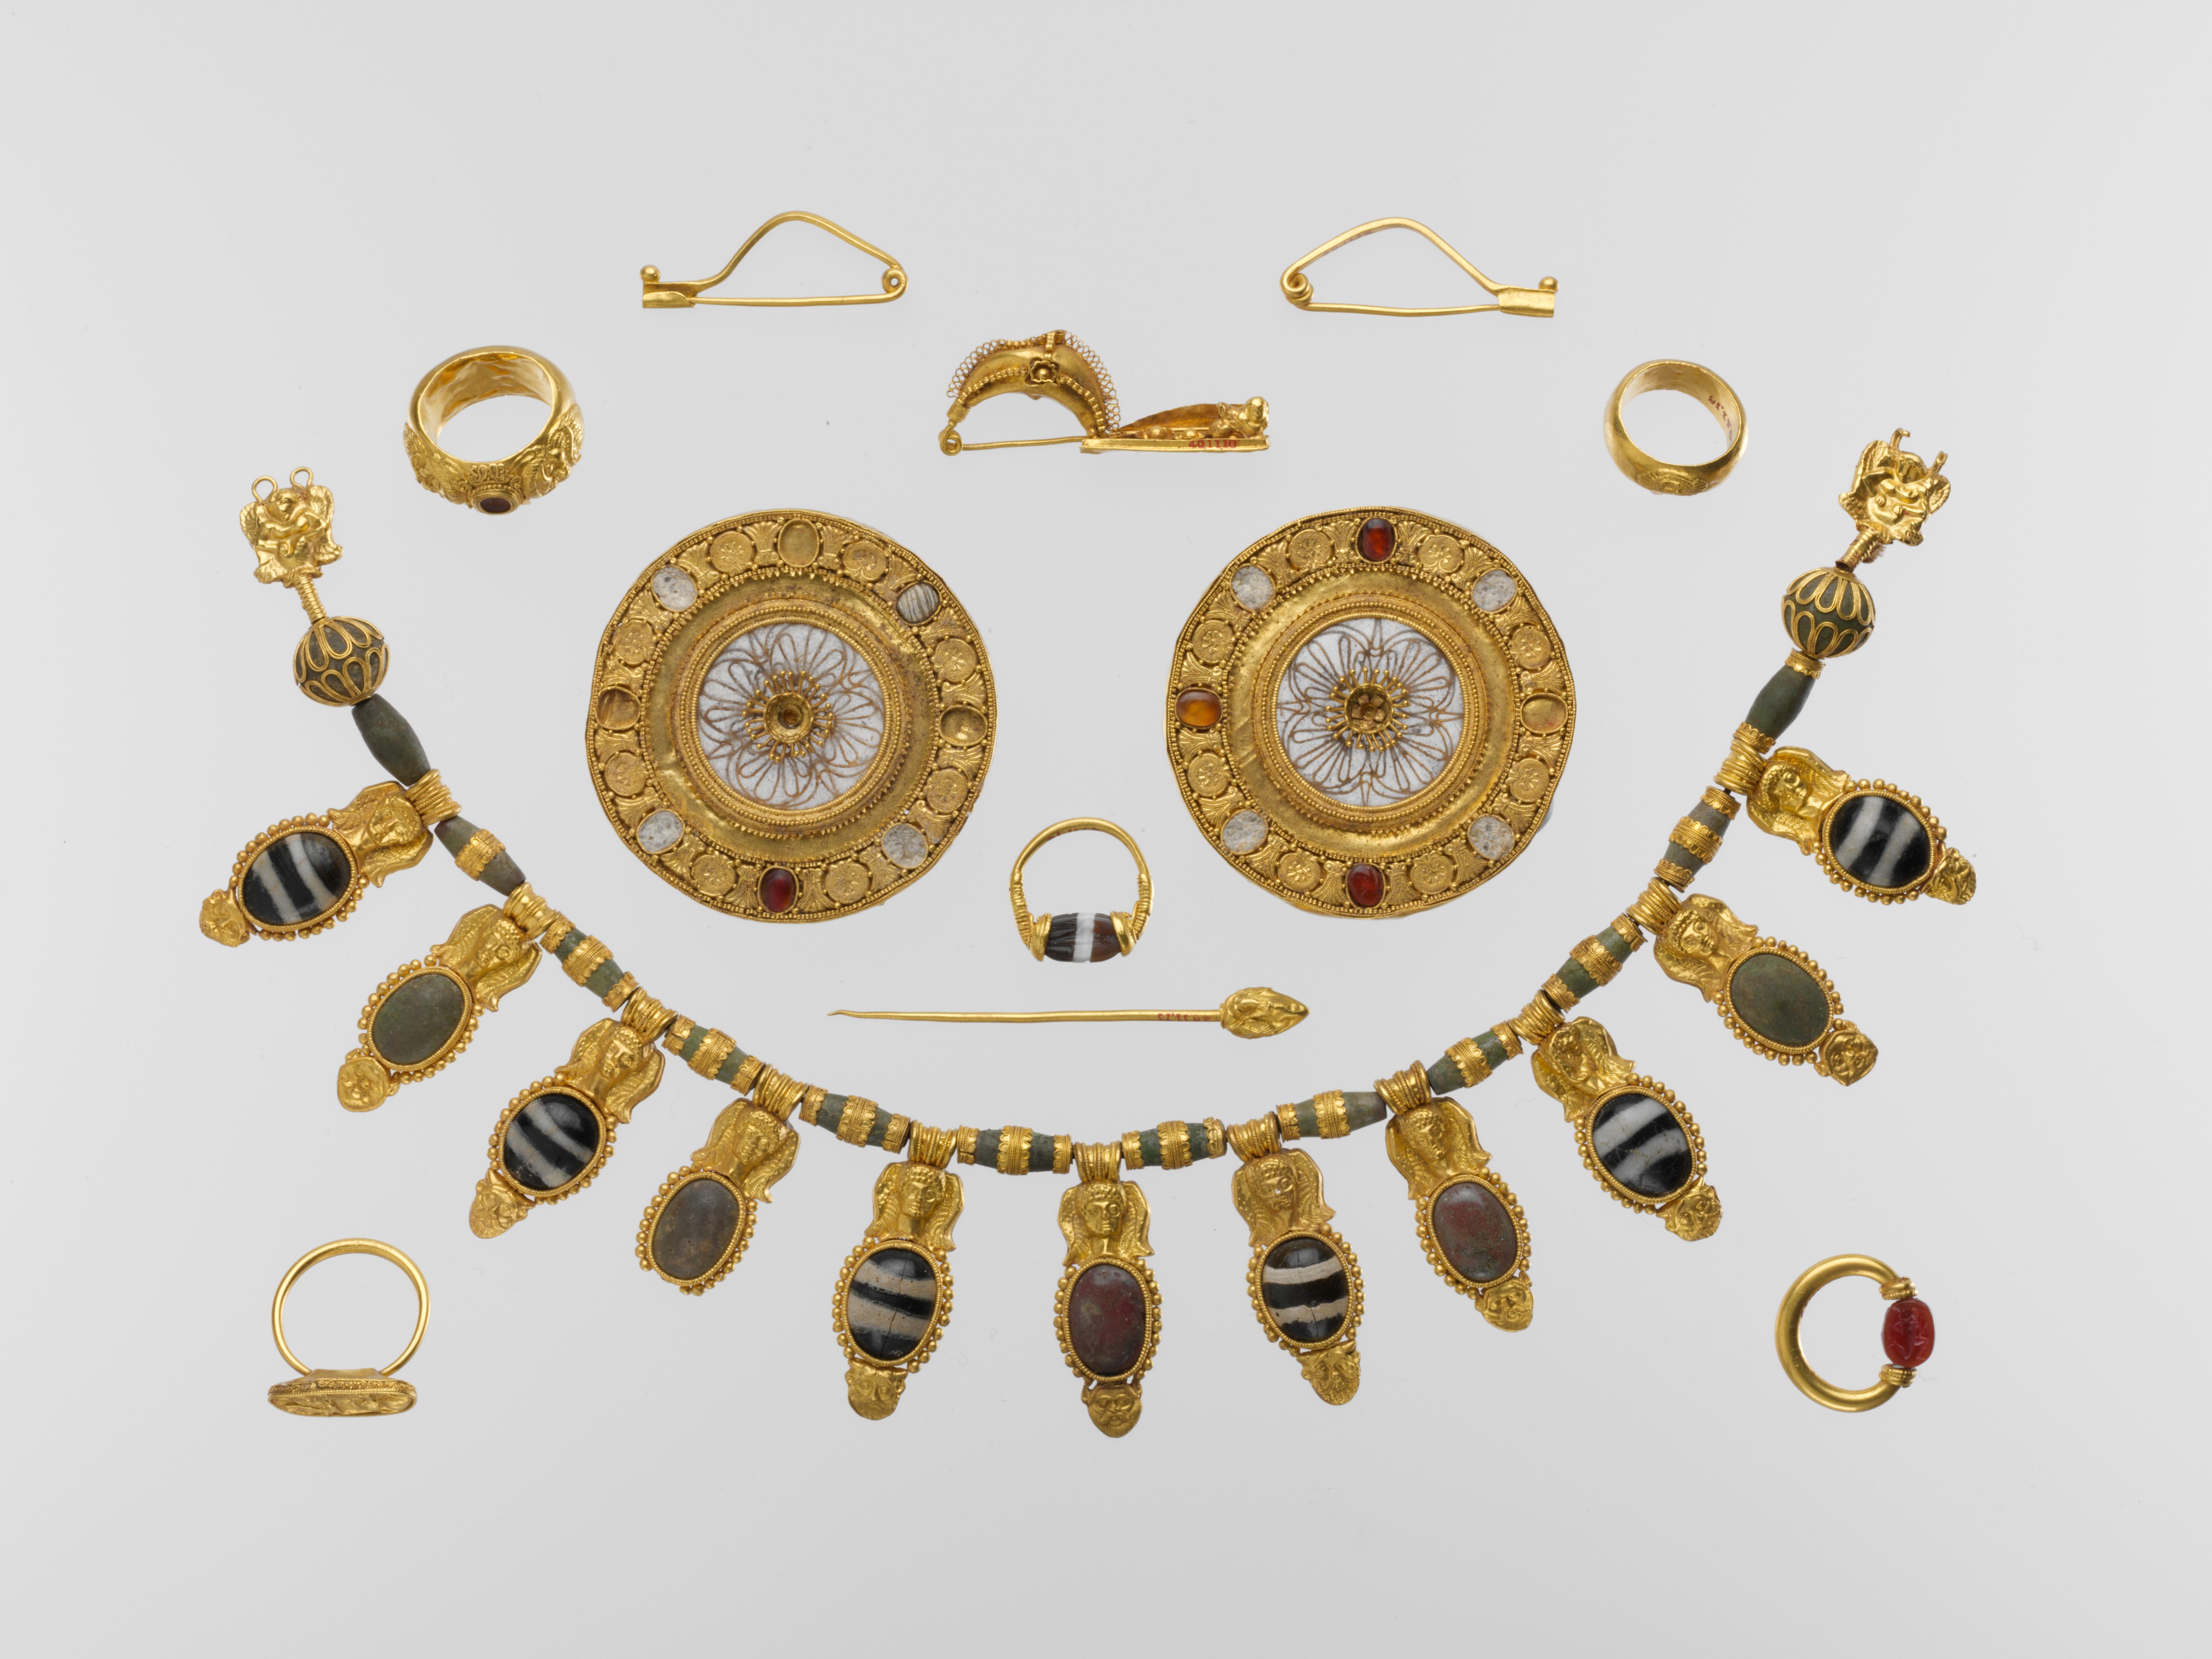 Этрусское золотое ожерелье с подвесными вазами и головами Ио.